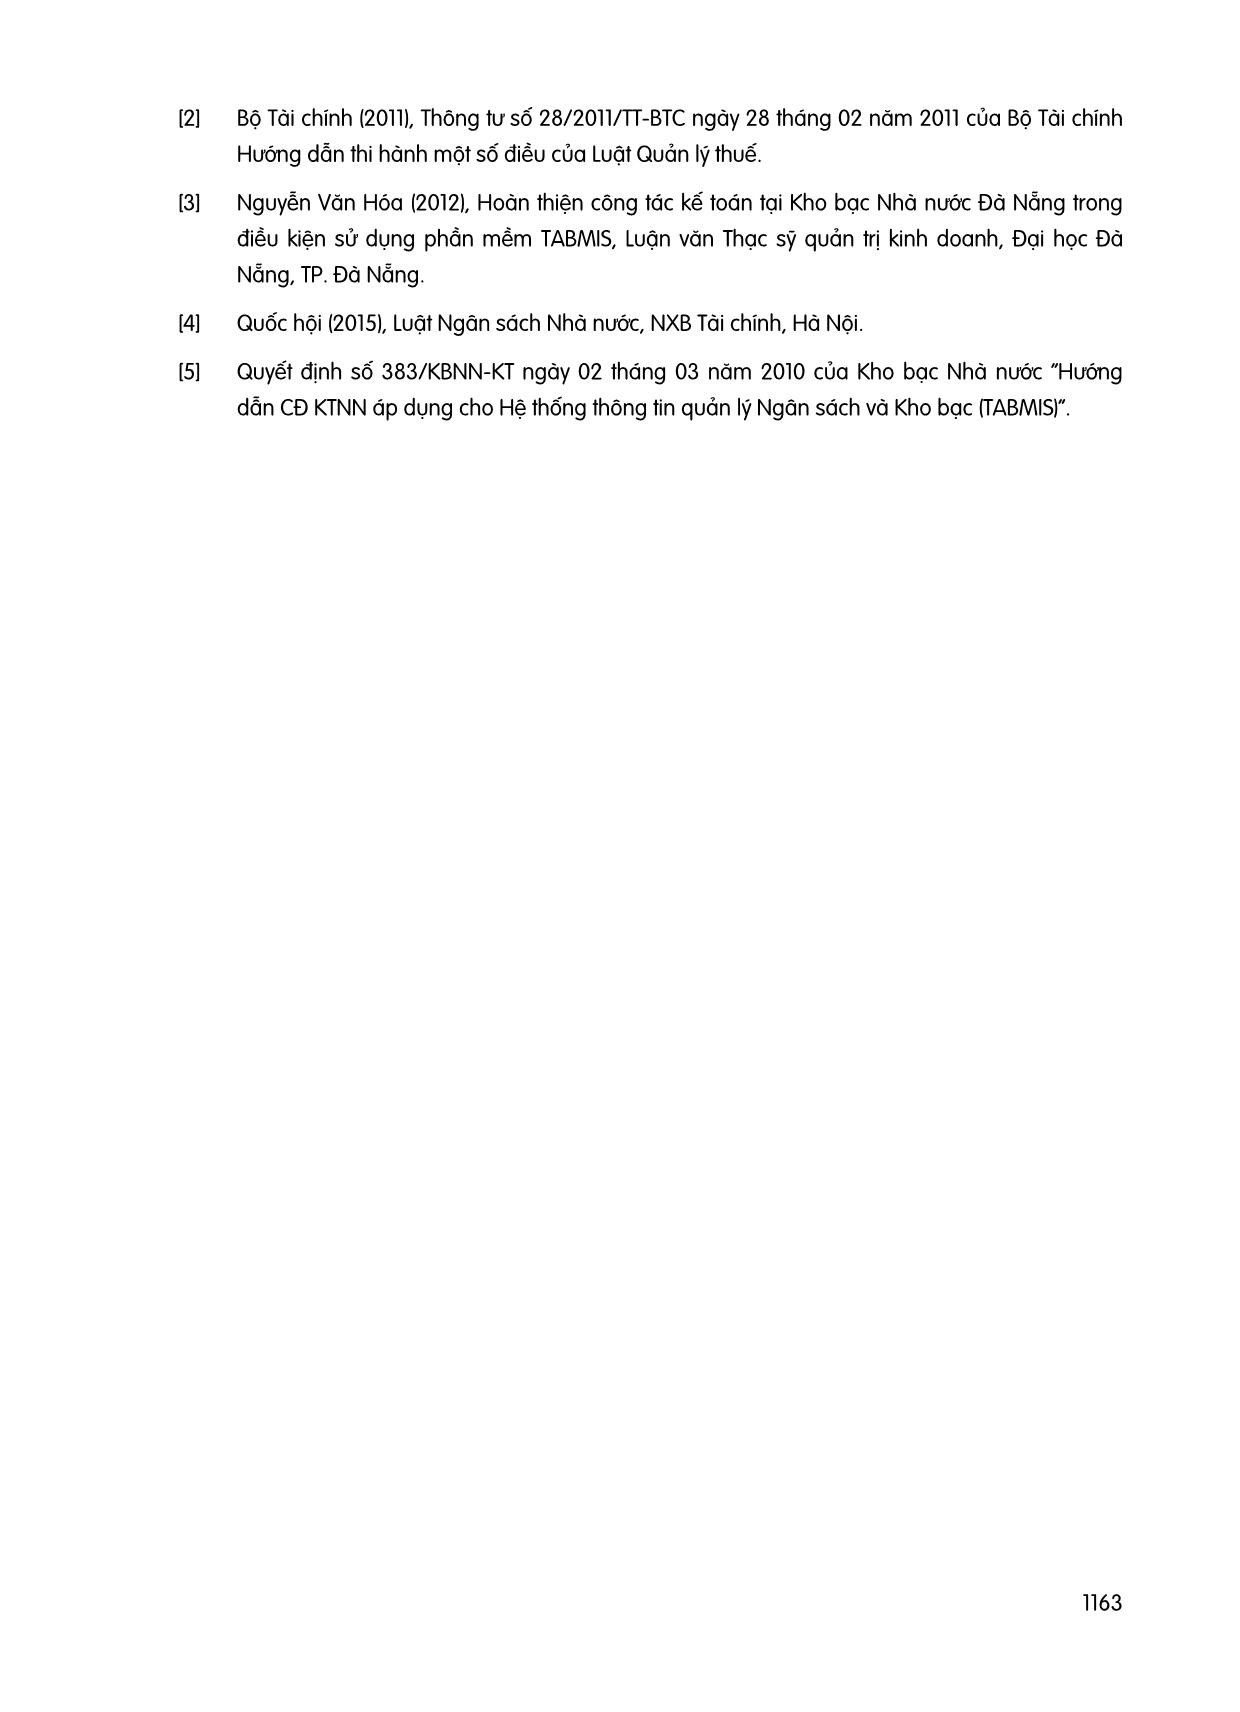 Hoàn thiện tổ chức công tác kế toán tại kho bạc nhà nước huyện Đồng phú tỉnh Bình phước trong điều kiện vận hành Tabmis trang 6